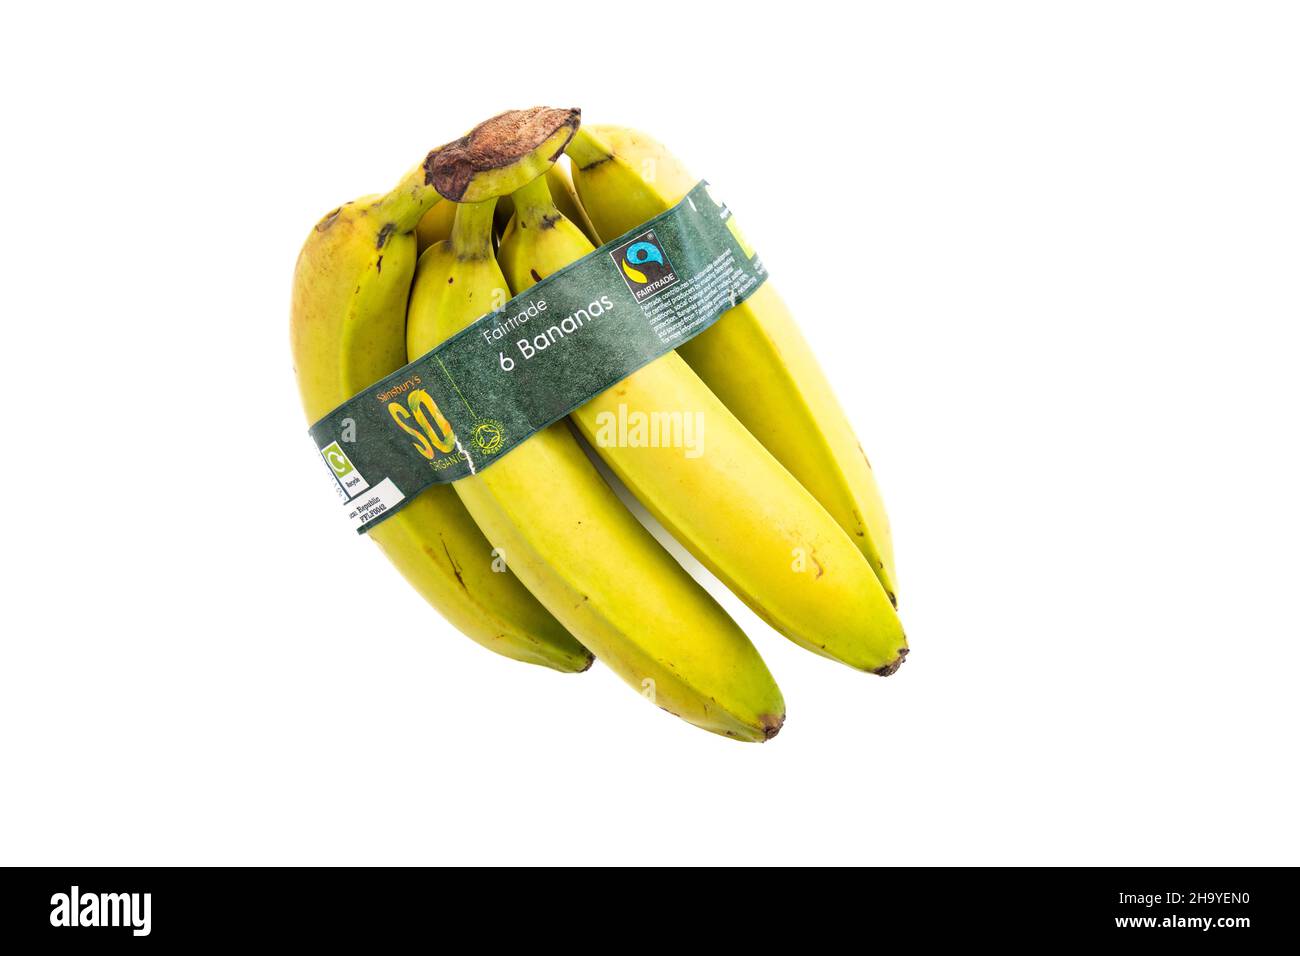 Bananen - Bund von 6 Alamy Stockfotografie Papier - Verpackung Bio-Fairtrade-Bananen - recyclebare UK mit